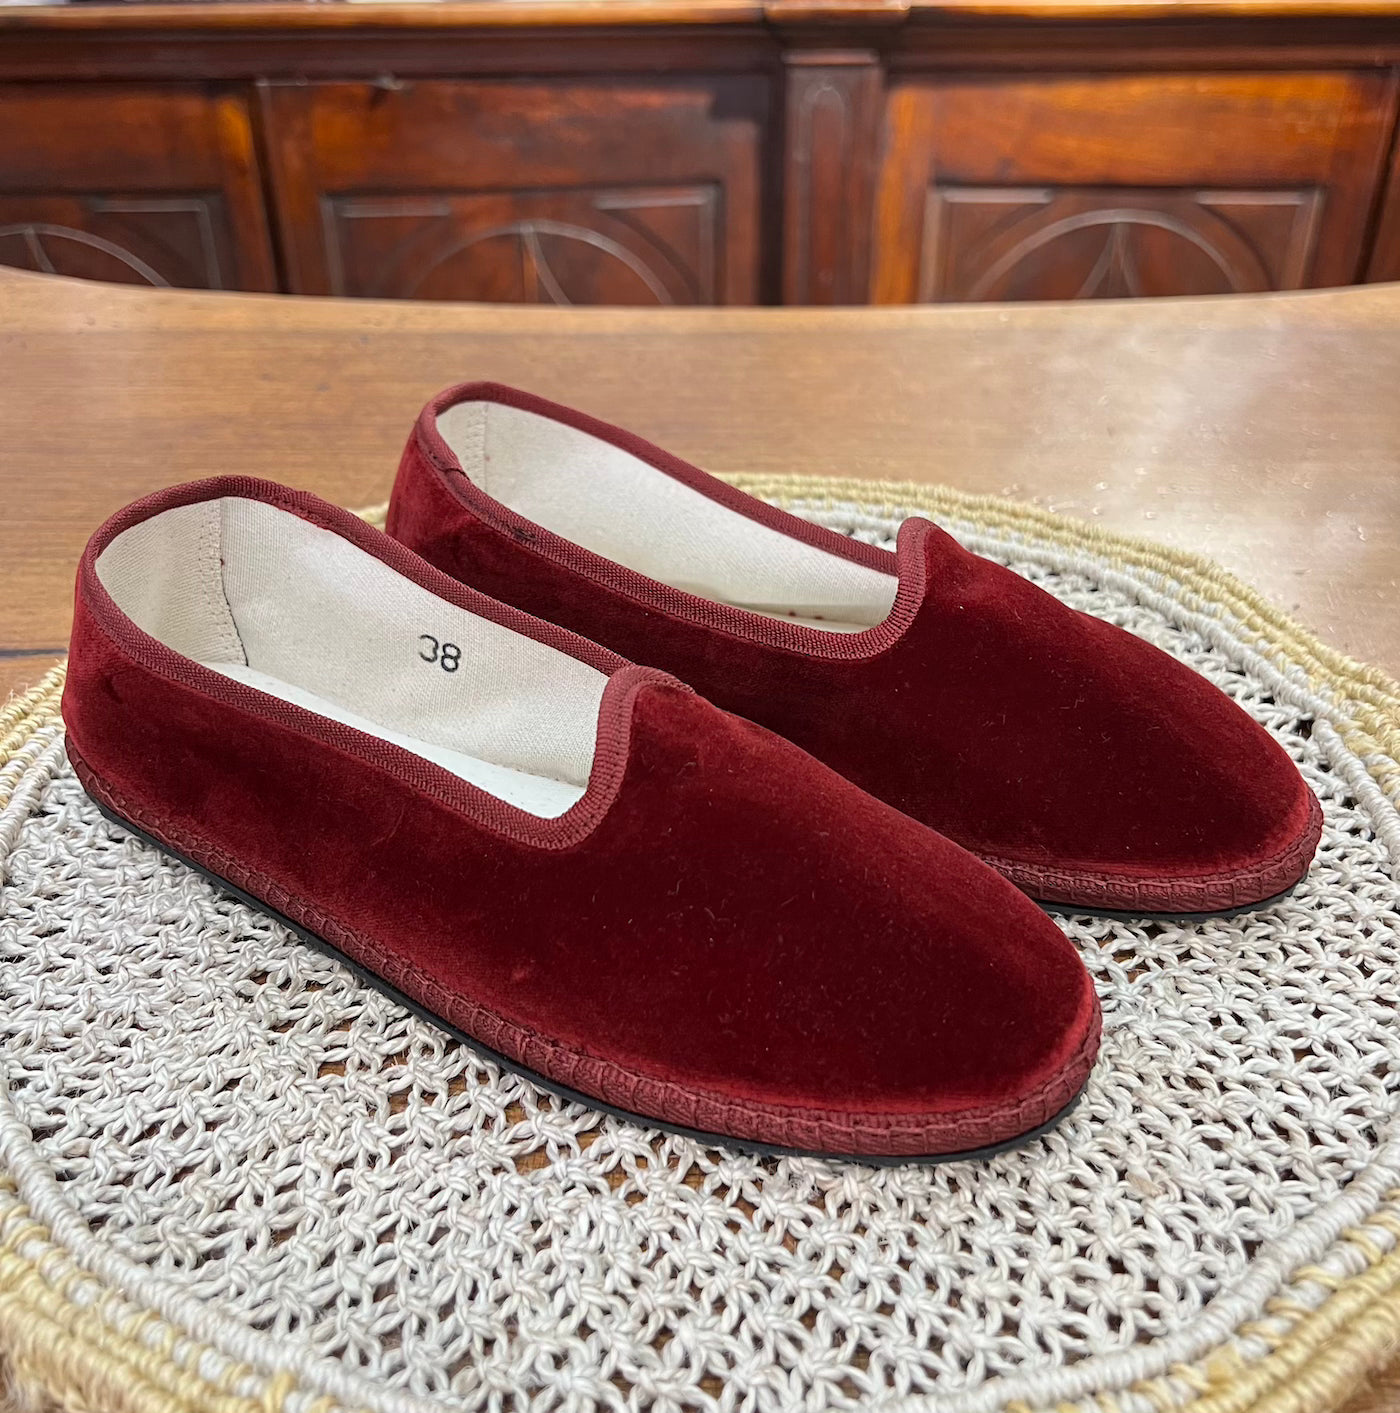 Friulane scarpe originali di colore bordeaux, realizzate a mano in Friuli